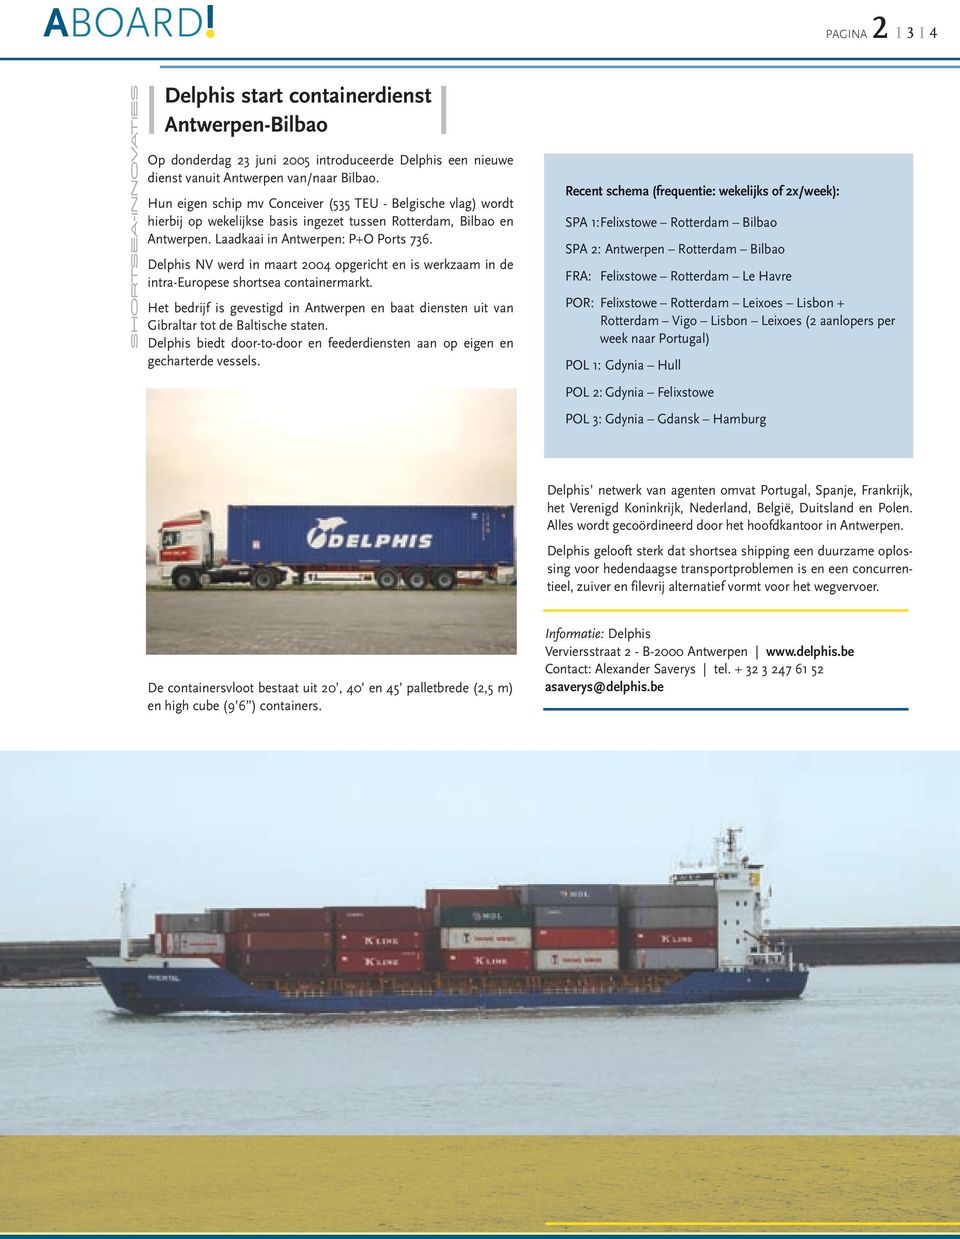 Delphis NV werd in maart 2004 opgericht en is werkzaam in de intra-europese shortsea containermarkt. Het bedrijf is gevestigd in Antwerpen en baat diensten uit van Gibraltar tot de Baltische staten.